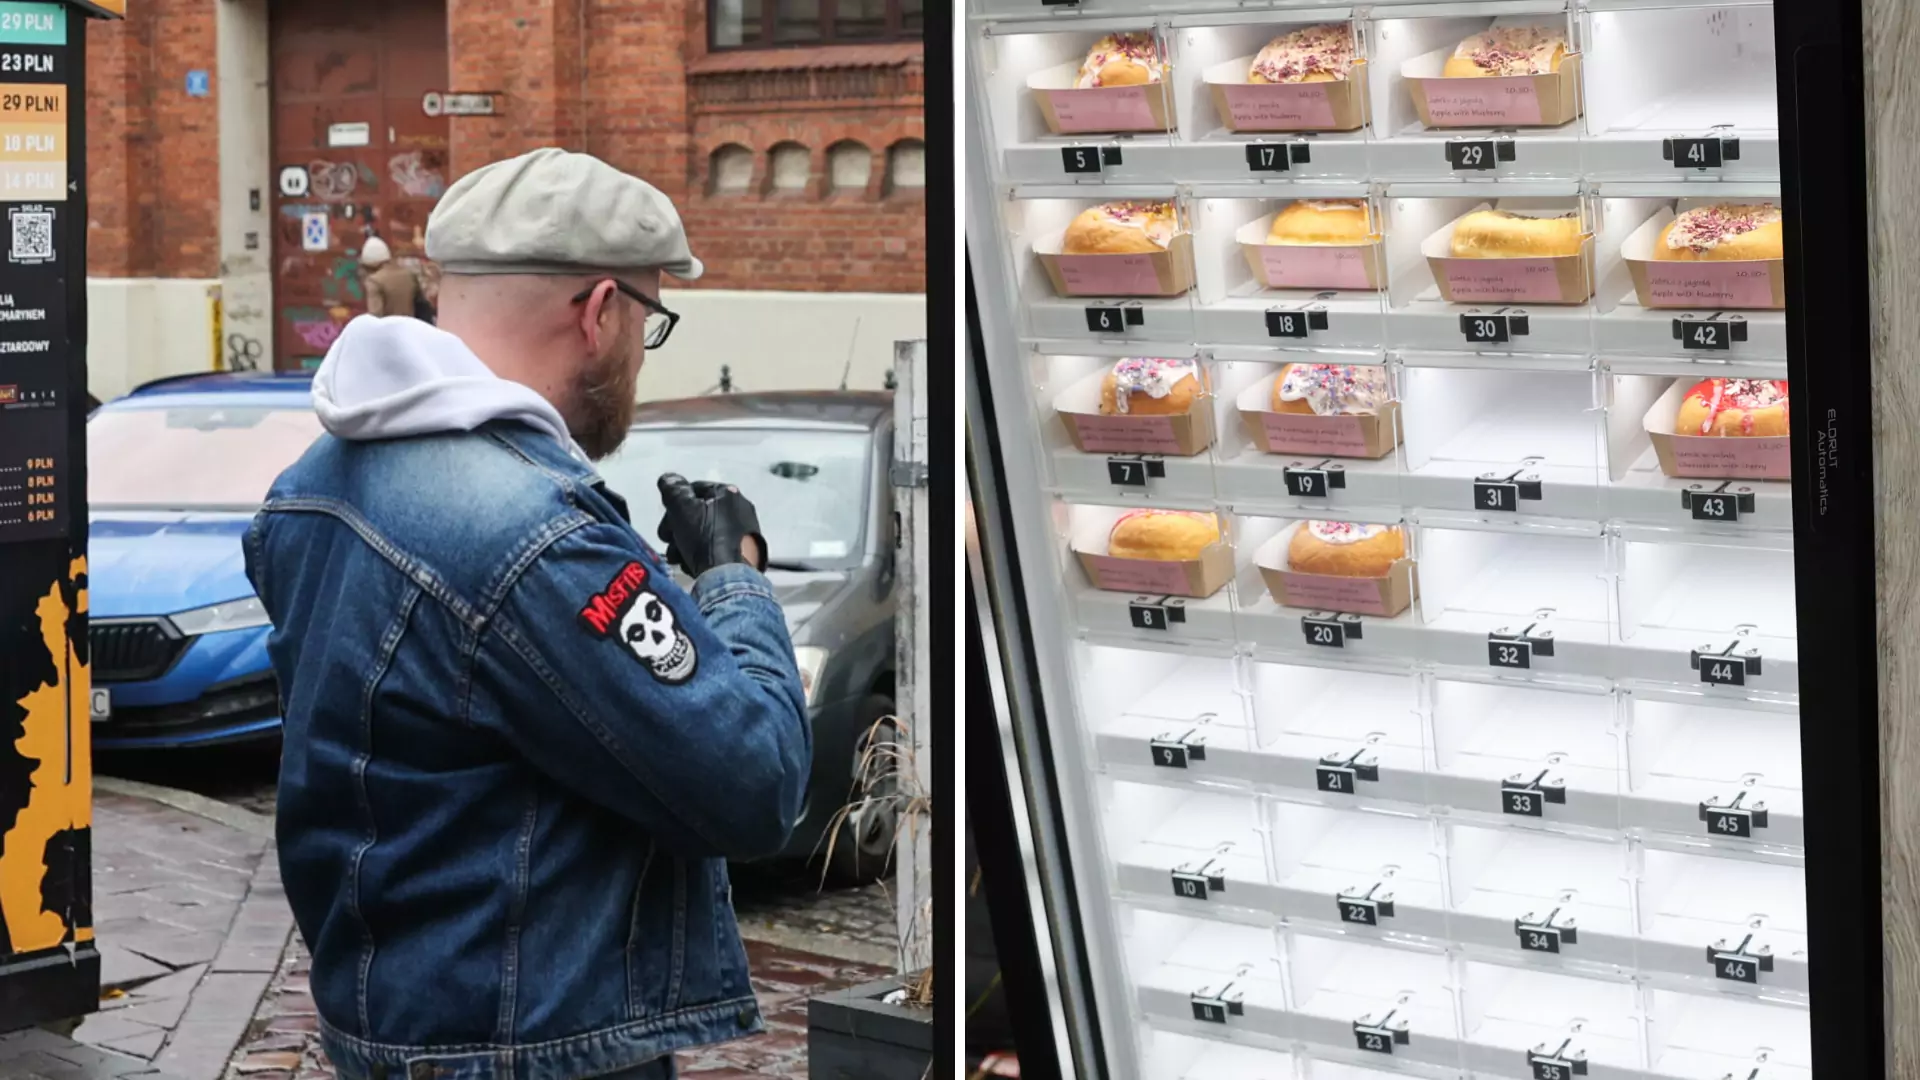 Nietypowy automat ze słodkościami w Krakowie. "Pierwszy na świecie"